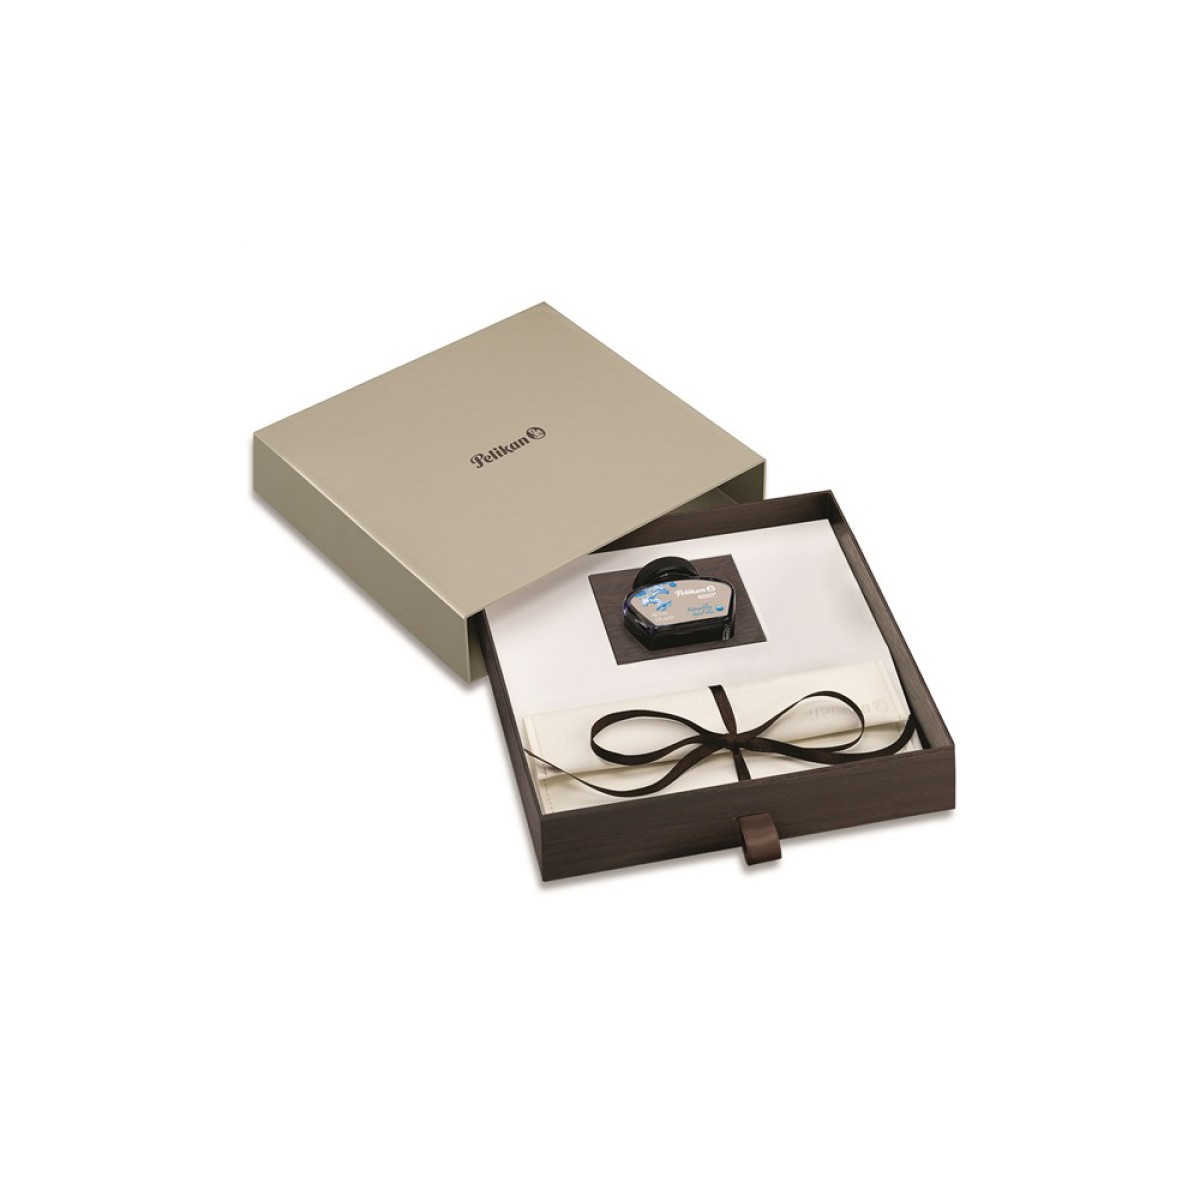 Pelikan - Classic M200 - Marrone marmorizzato - Stilografica e inchiostro in box regalo